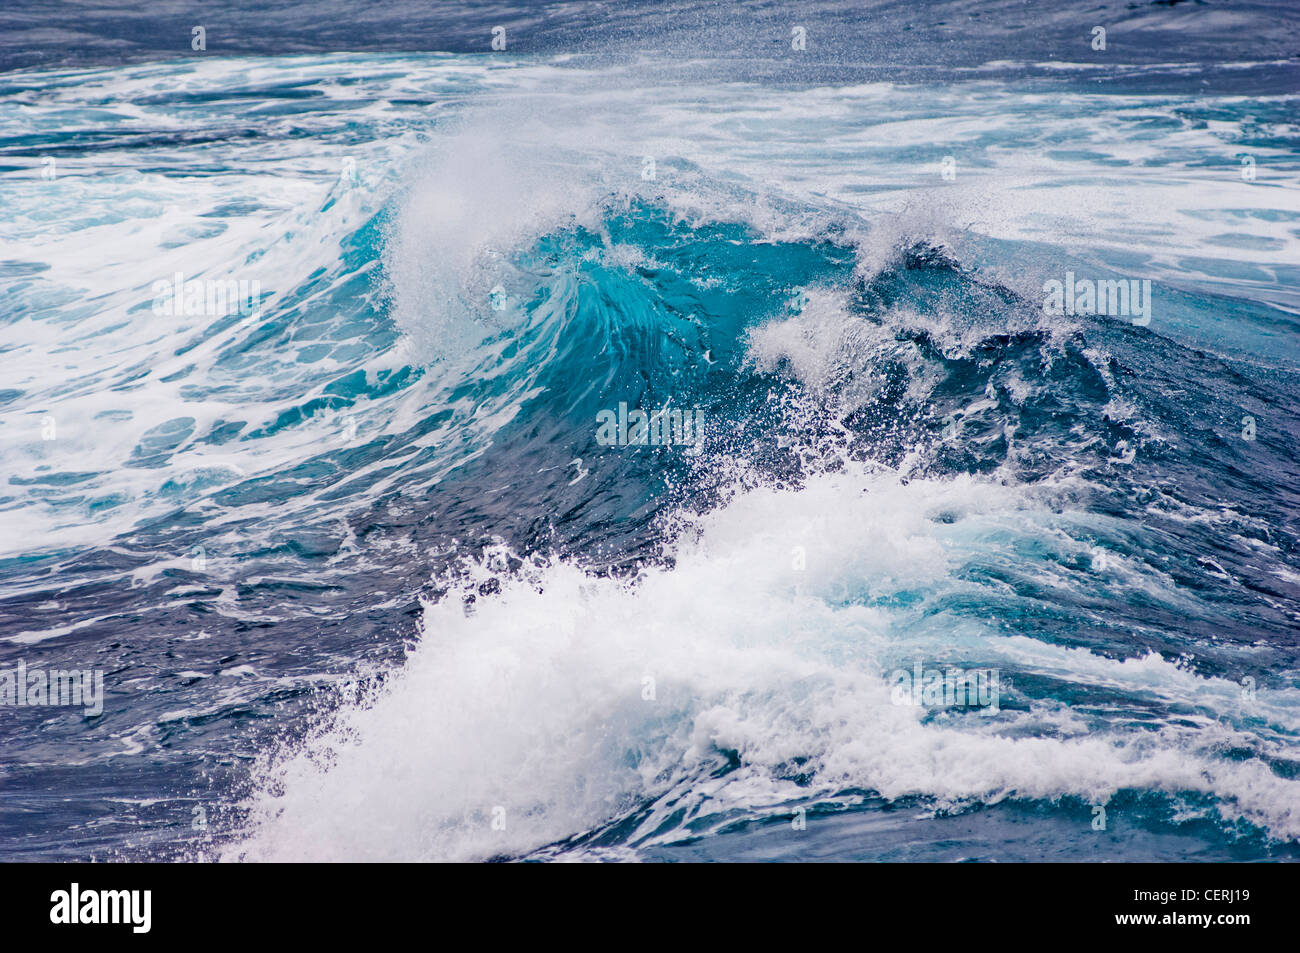 Crashing waves off the coast of Tenerife Stock Photo